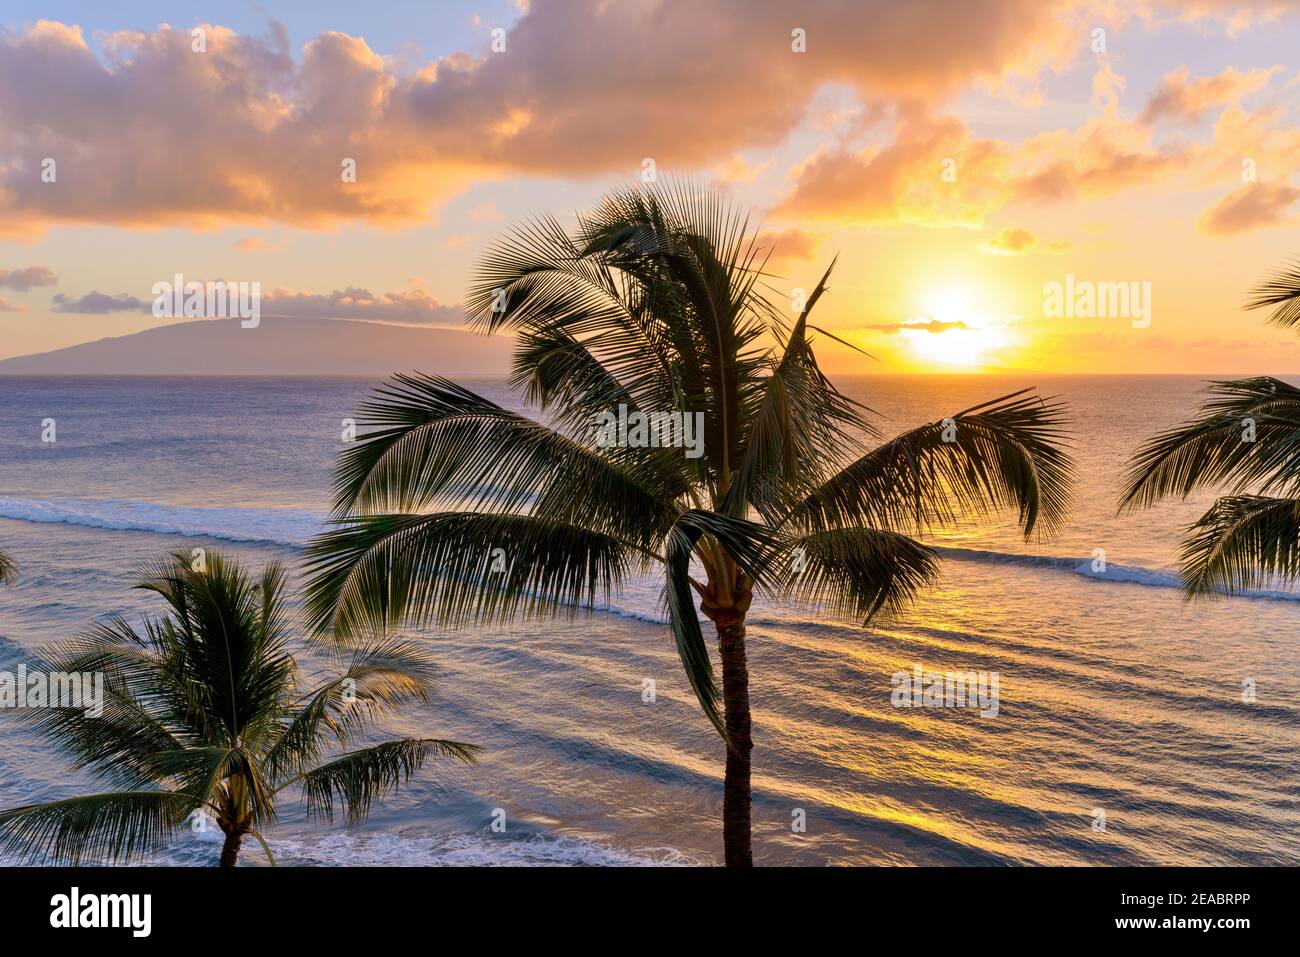 Sunset Maui - UN coucher de soleil coloré sur la côte nord-ouest de Maui, avec l'île Lanai en arrière-plan. Maui, Hawaï, États-Unis. Banque D'Images